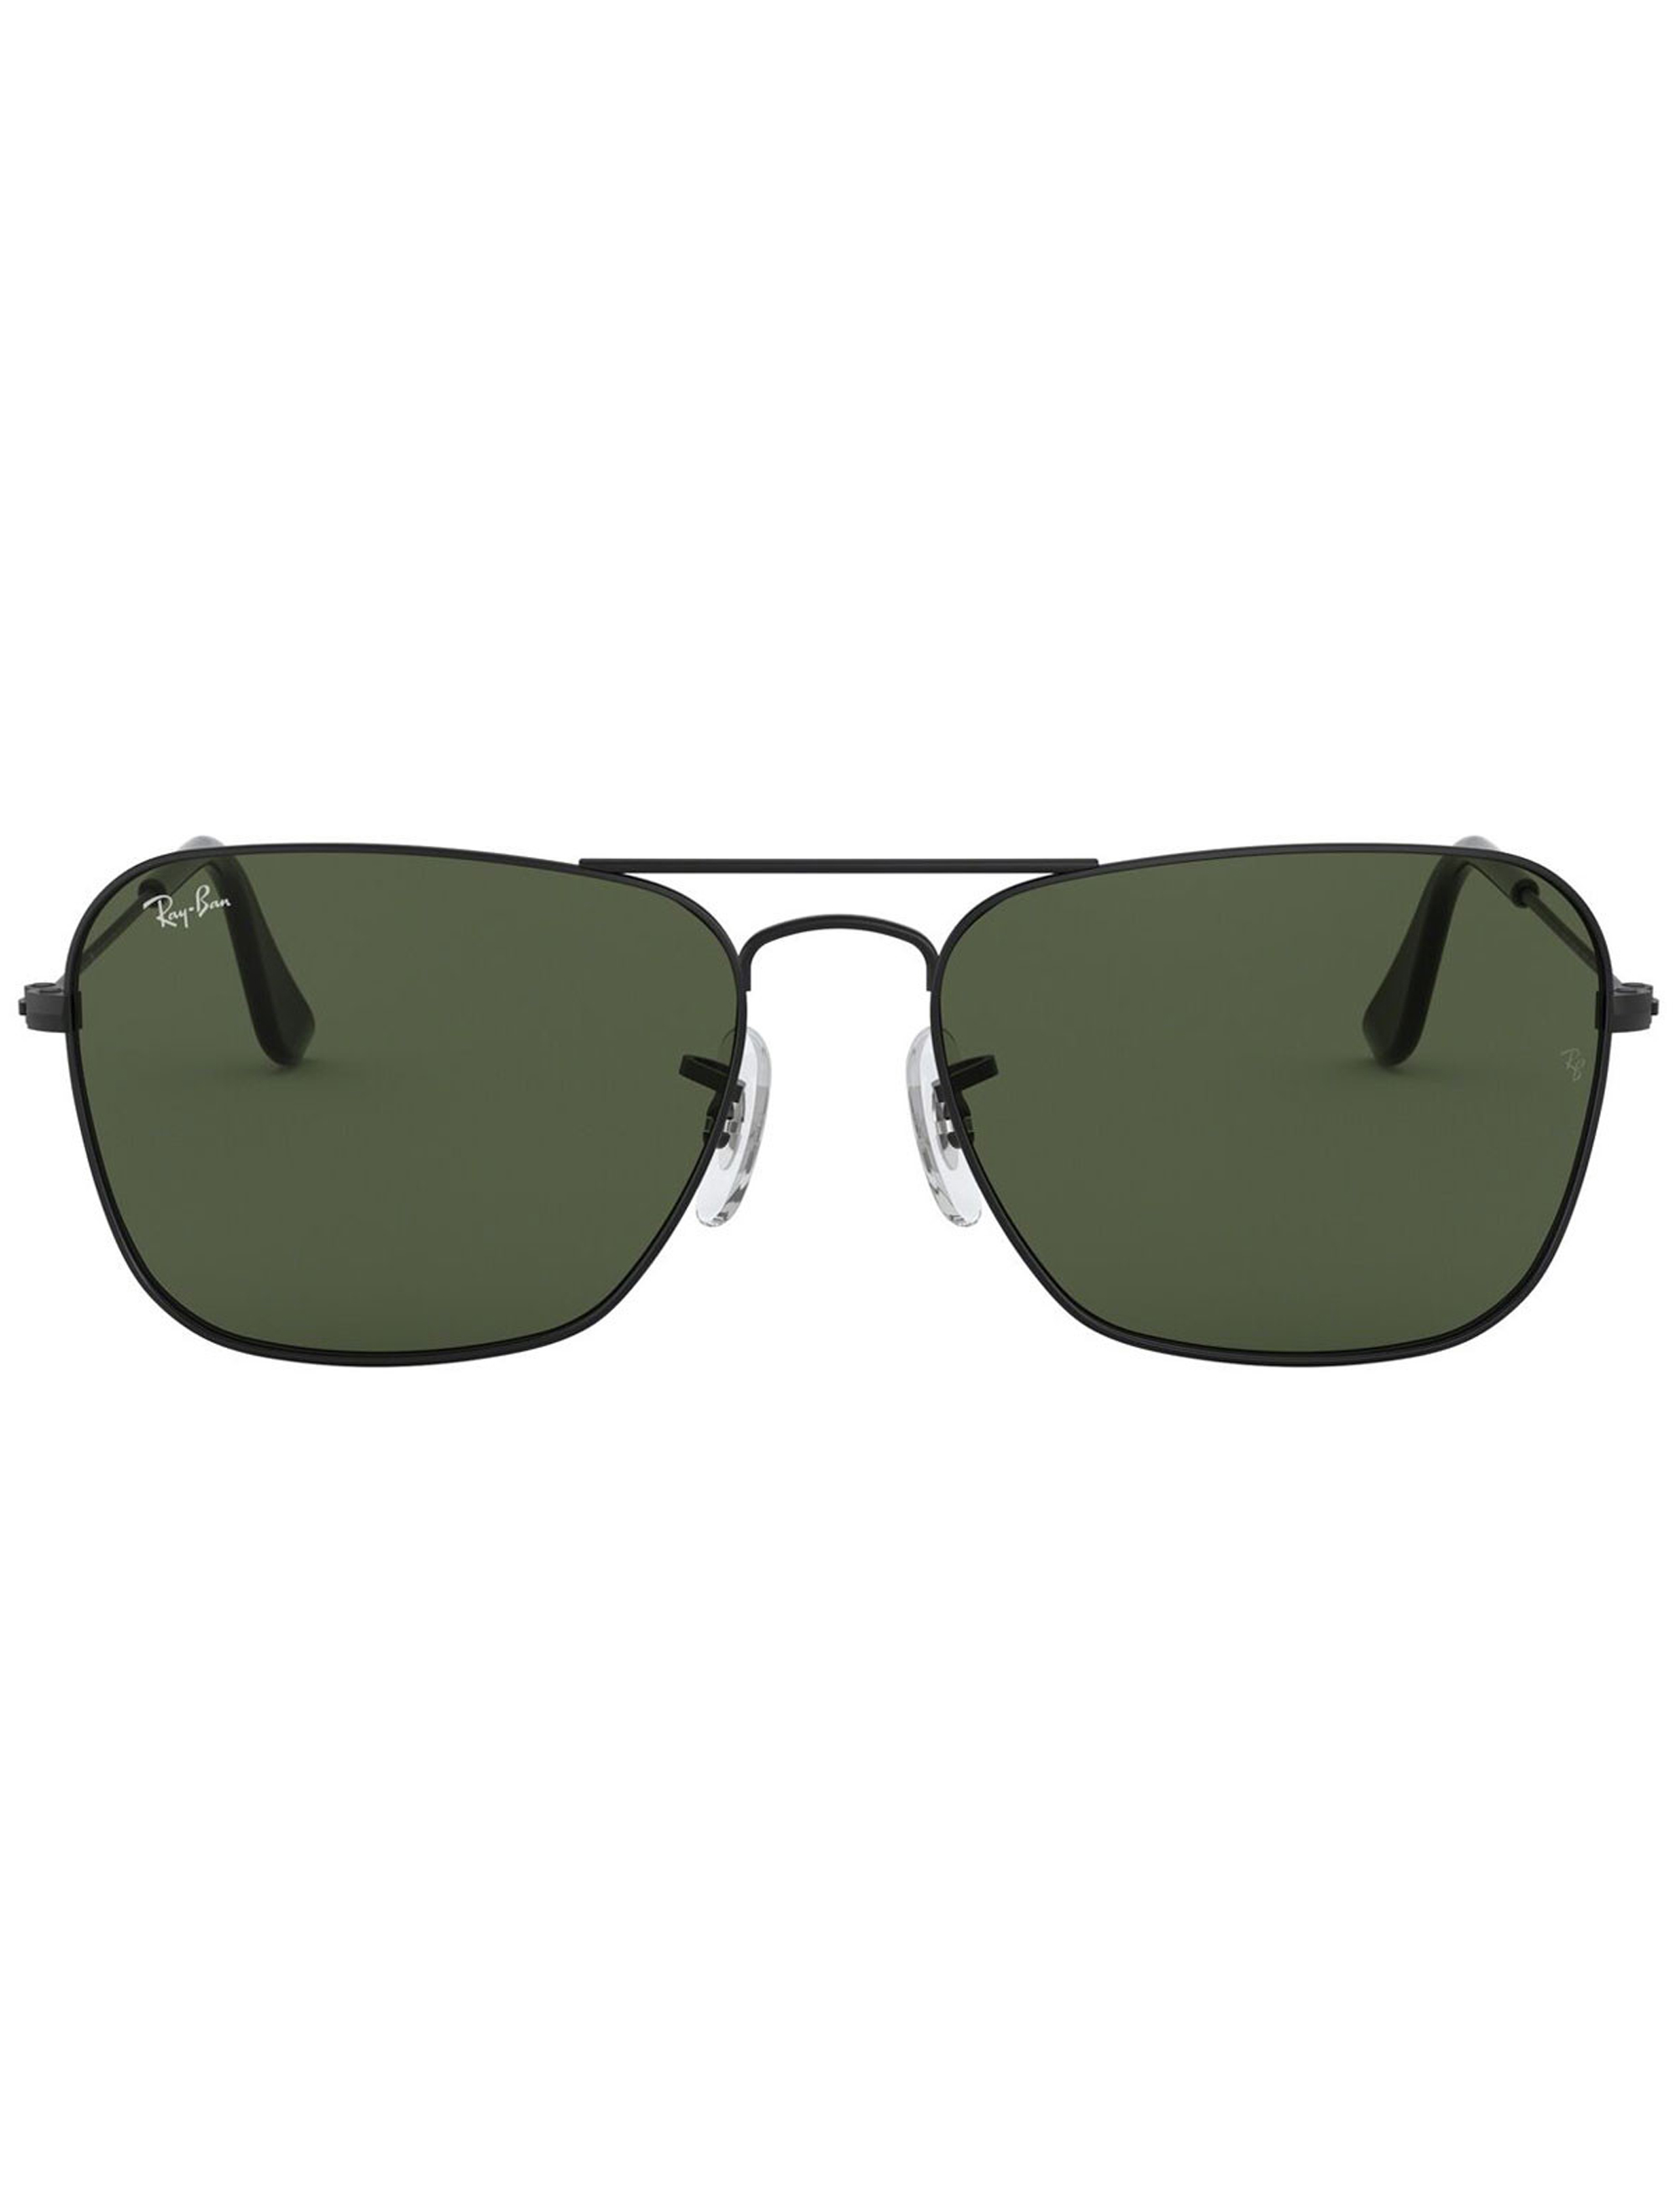 عینک آفتابی ری بن مدل 3136-002-58